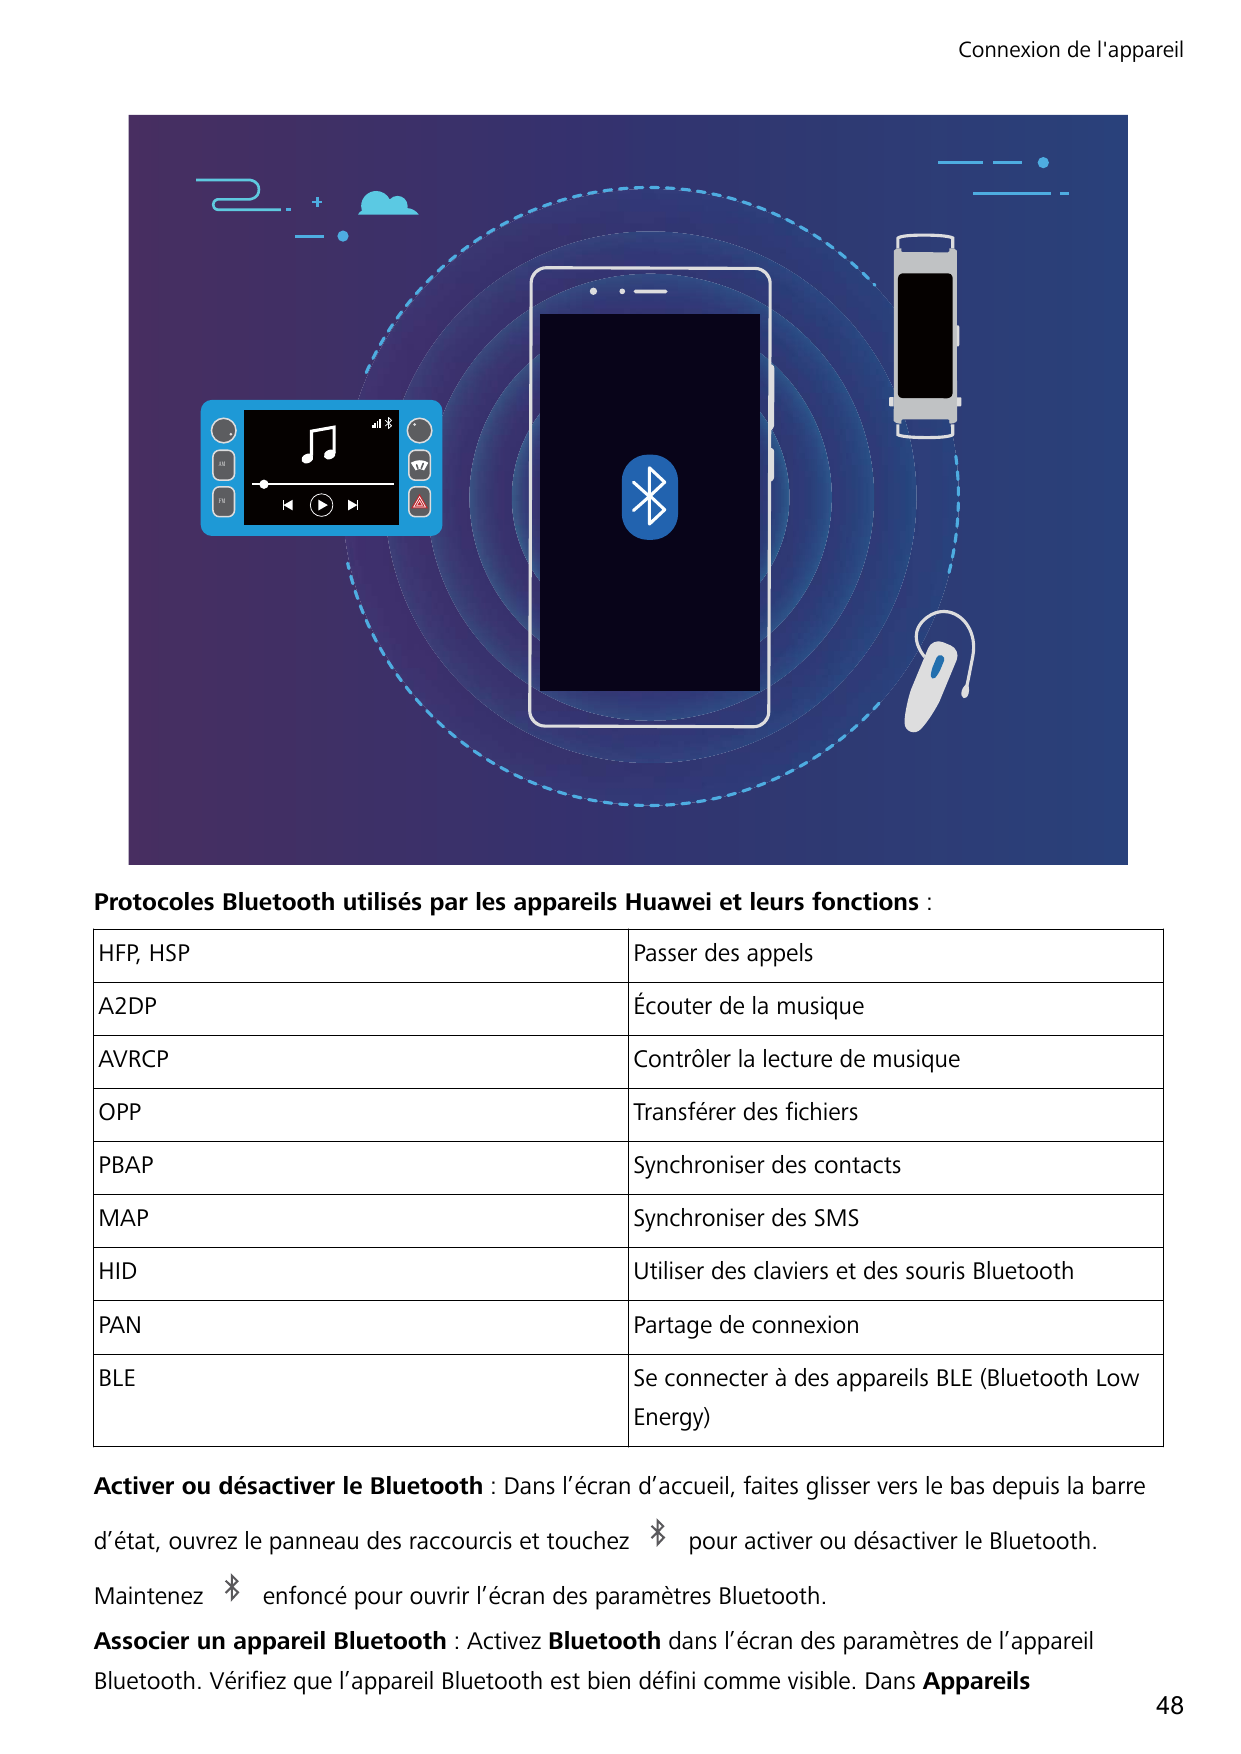 Connexion de l'appareil$0)0Protocoles Bluetooth utilisés par les appareils Huawei et leurs fonctions :HFP, HSPPasser des appelsA